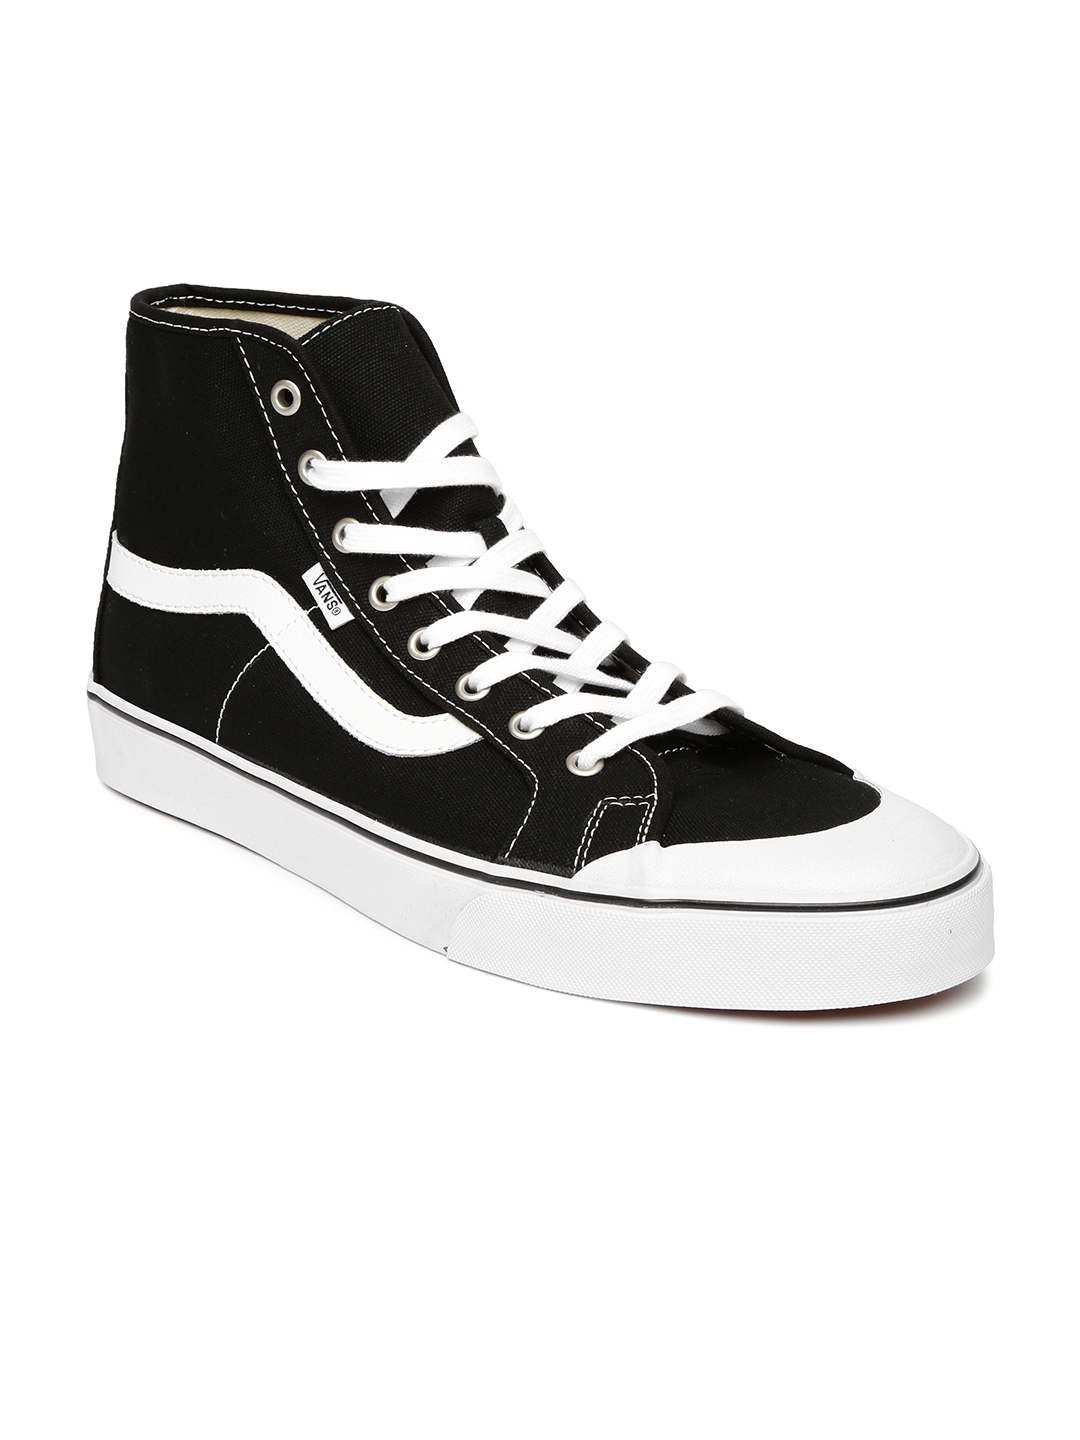 Buy Vans Men Black Skateboard Shoes - Casual Shoes for Men 1207760 | Myntra